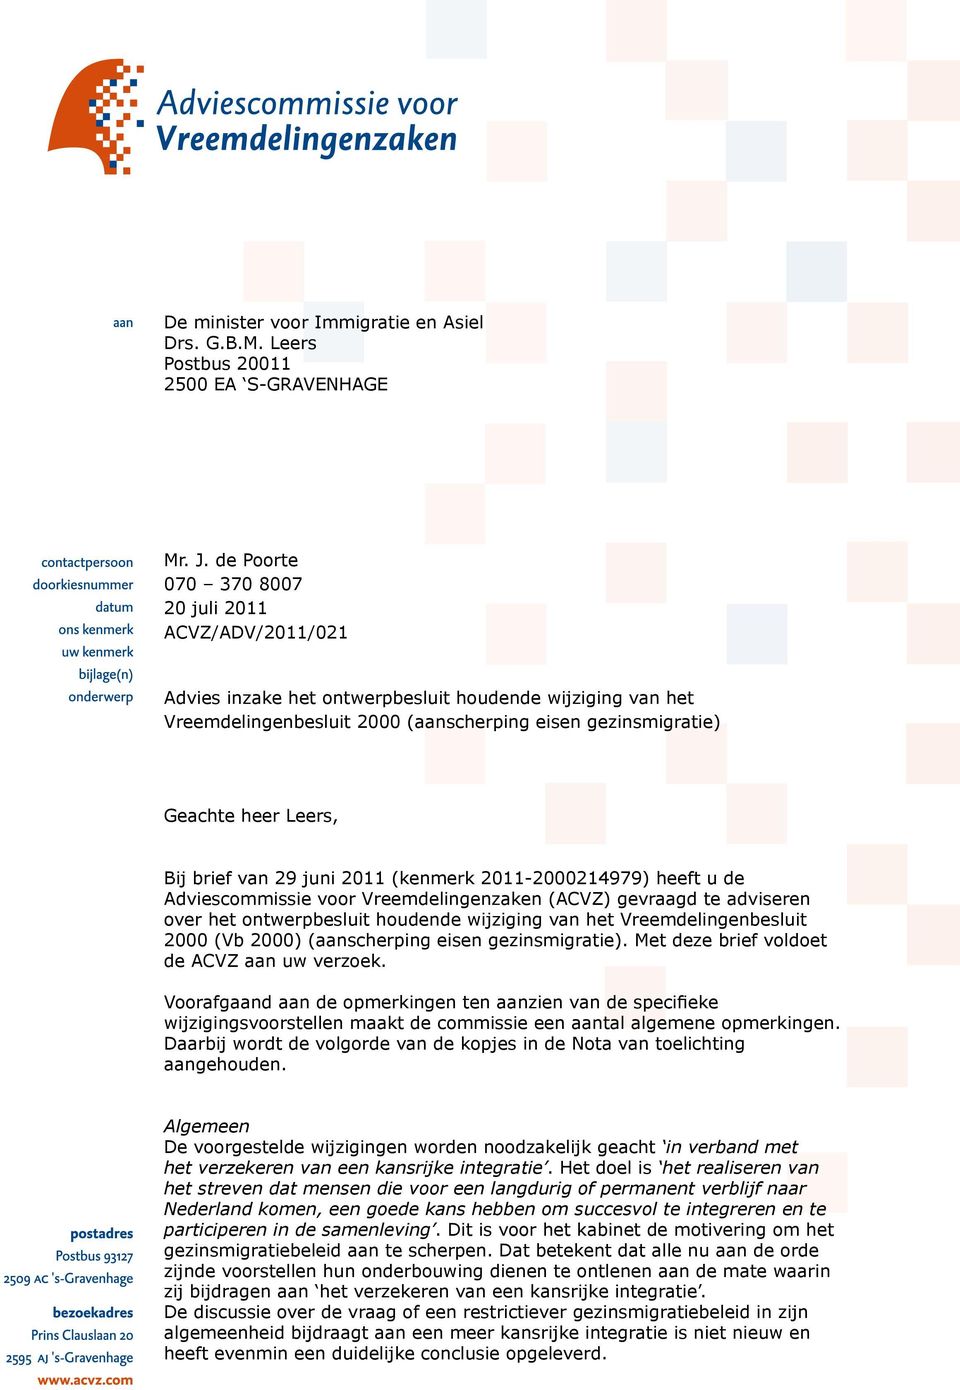 brief van 29 juni 2011 (kenmerk 2011-2000214979) heeft u de Adviescommissie voor Vreemdelingenzaken (ACVZ) gevraagd te adviseren over het ontwerpbesluit houdende wijziging van het